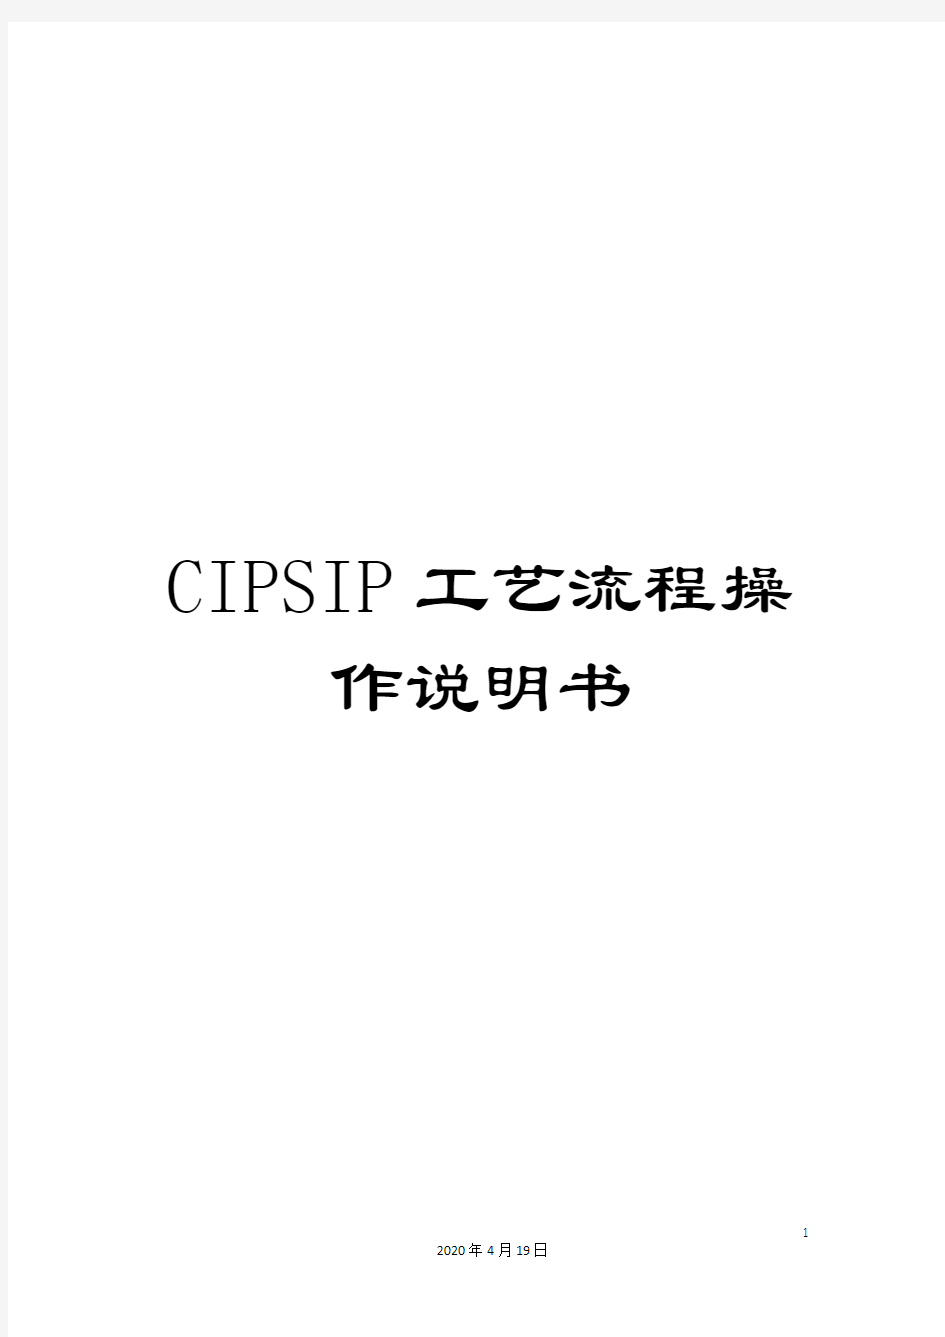 CIPSIP工艺流程操作说明书